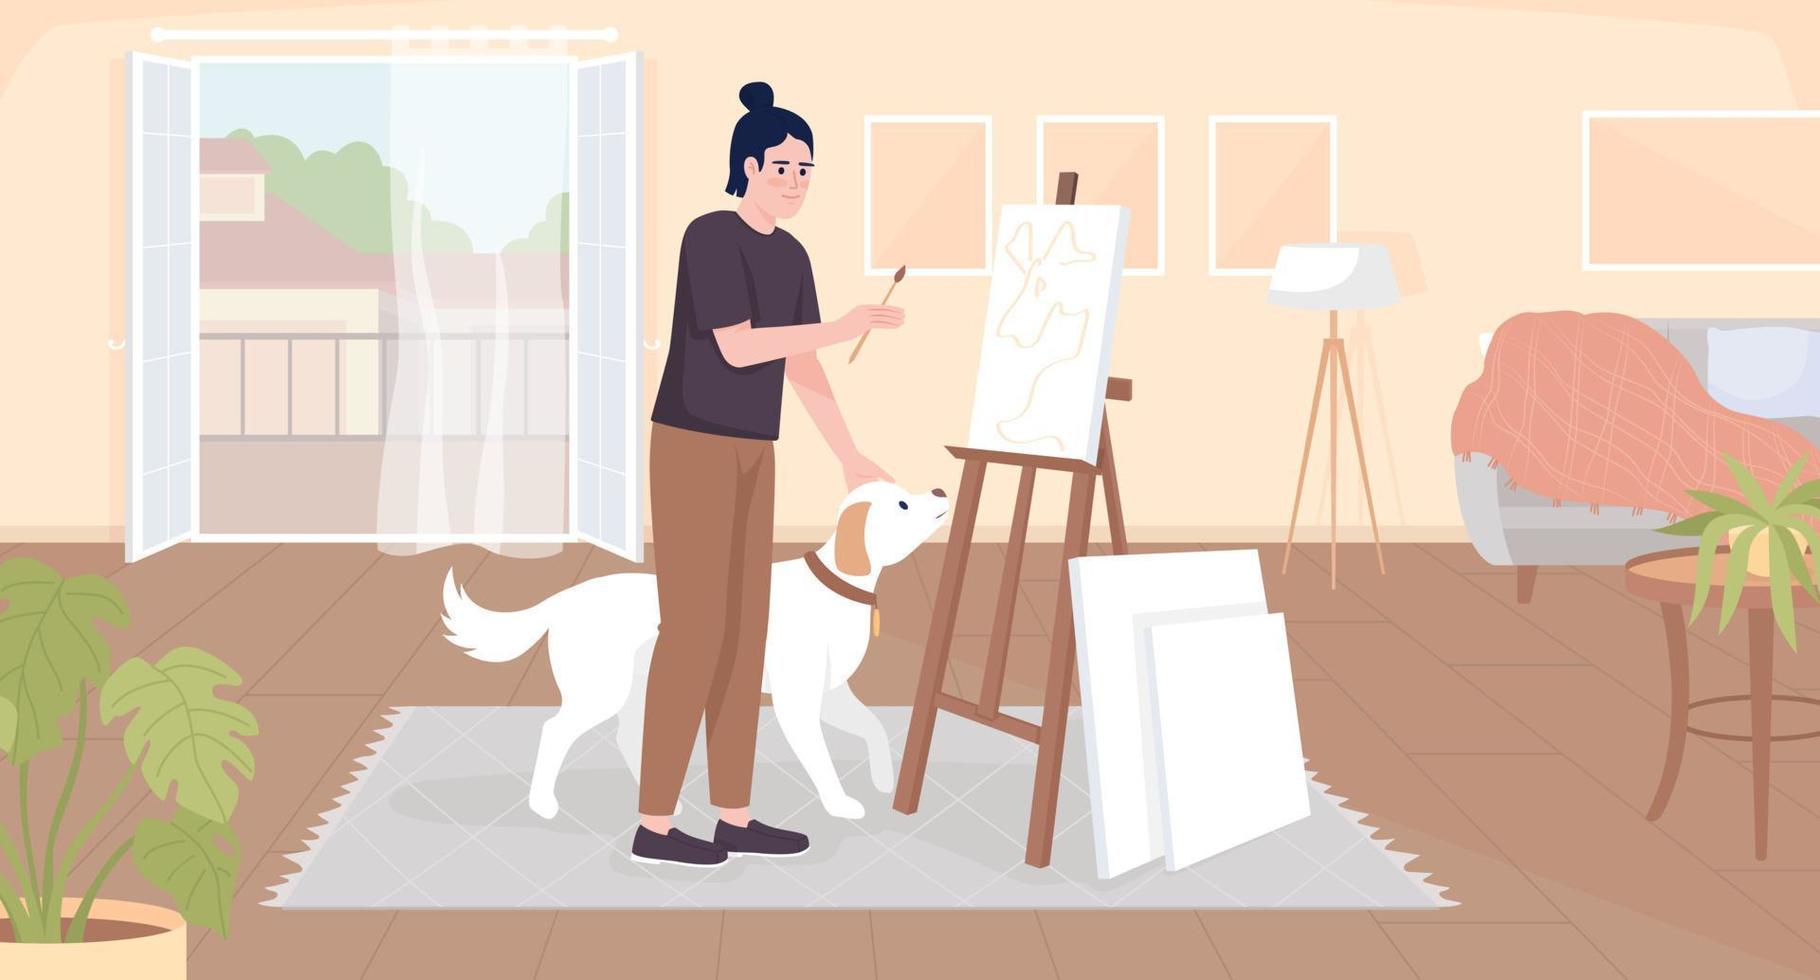 Erstellen von Kunstwerken zu Hause flache Farbvektorillustration. glücklicher kerl, der hund streichelt und auf leinwand malt. vollständig bearbeitbare einfache 2d-zeichentrickfigur mit balkon und wohnzimmerinnenraum im hintergrund vektor